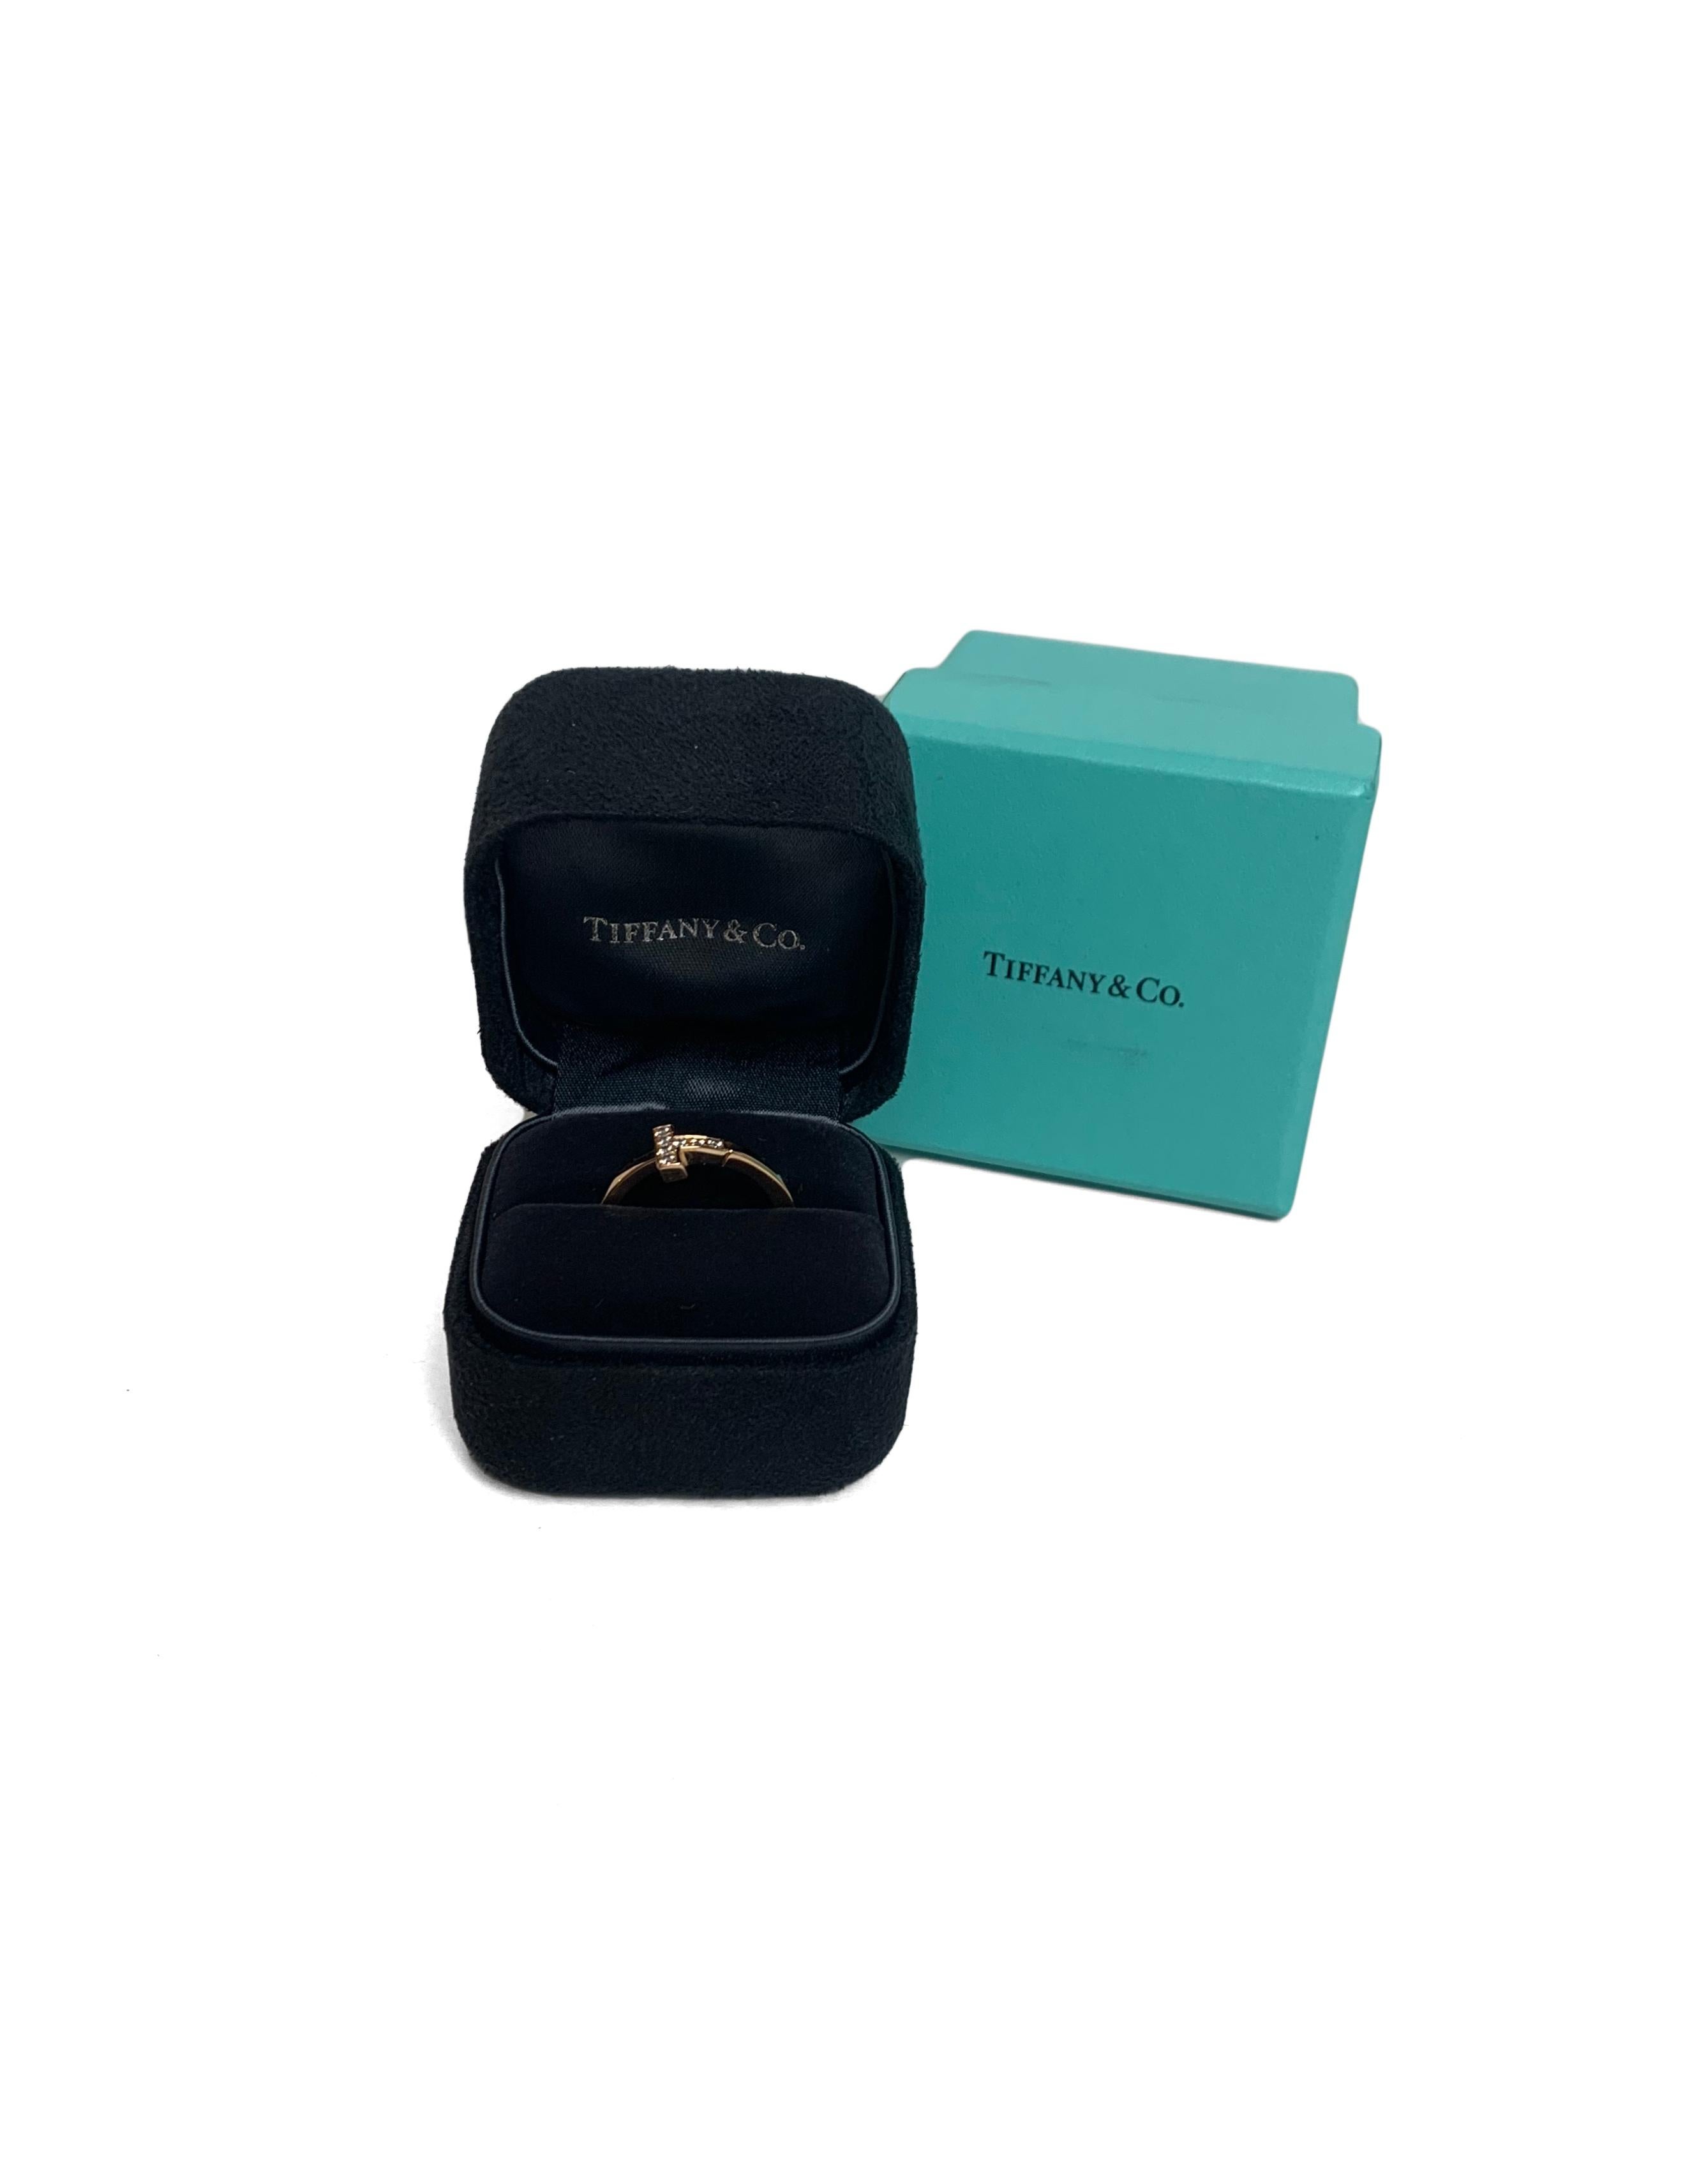 Tiffany & Co 18k Rose Gold T Square Diamond Wrap Ring sz 7.5 rt. $2, 500 1